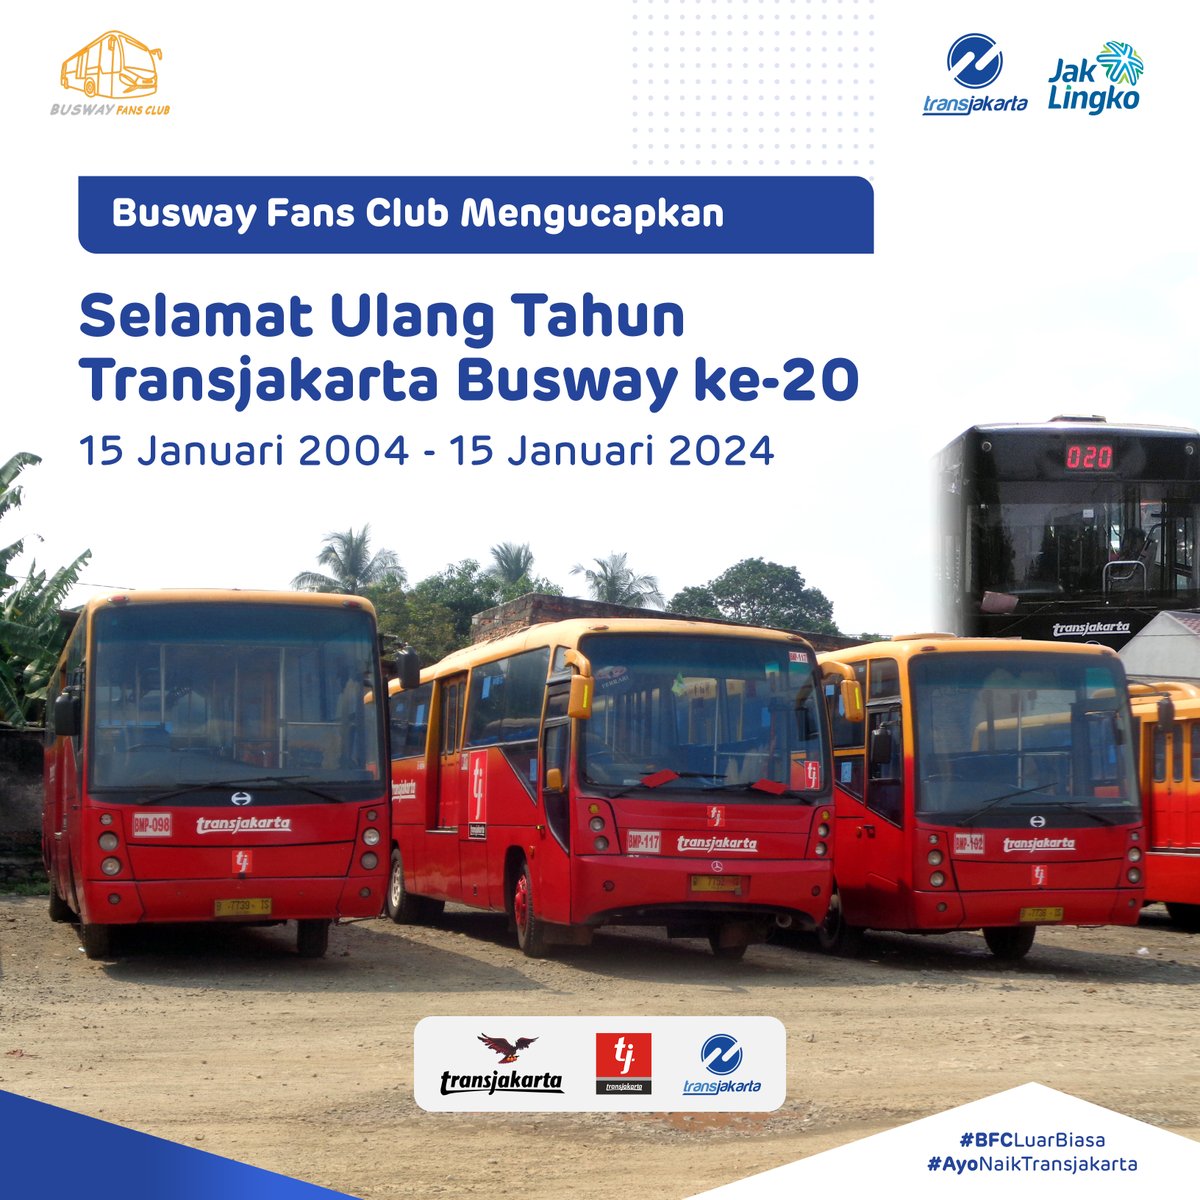 Tak terasa 20 tahun sudah layanan Transjakarta hadir melayani warga Jakarta, hingga sampai hari ini bisa melayani kota penyangga. Dari operator konsorsium, hingga pengoperasian secara swakelola. BFC mengucapkan Selamat Ulang Tahun Transjakarta ke-20

#BuswayFansClub
#BFCLuarBiasa